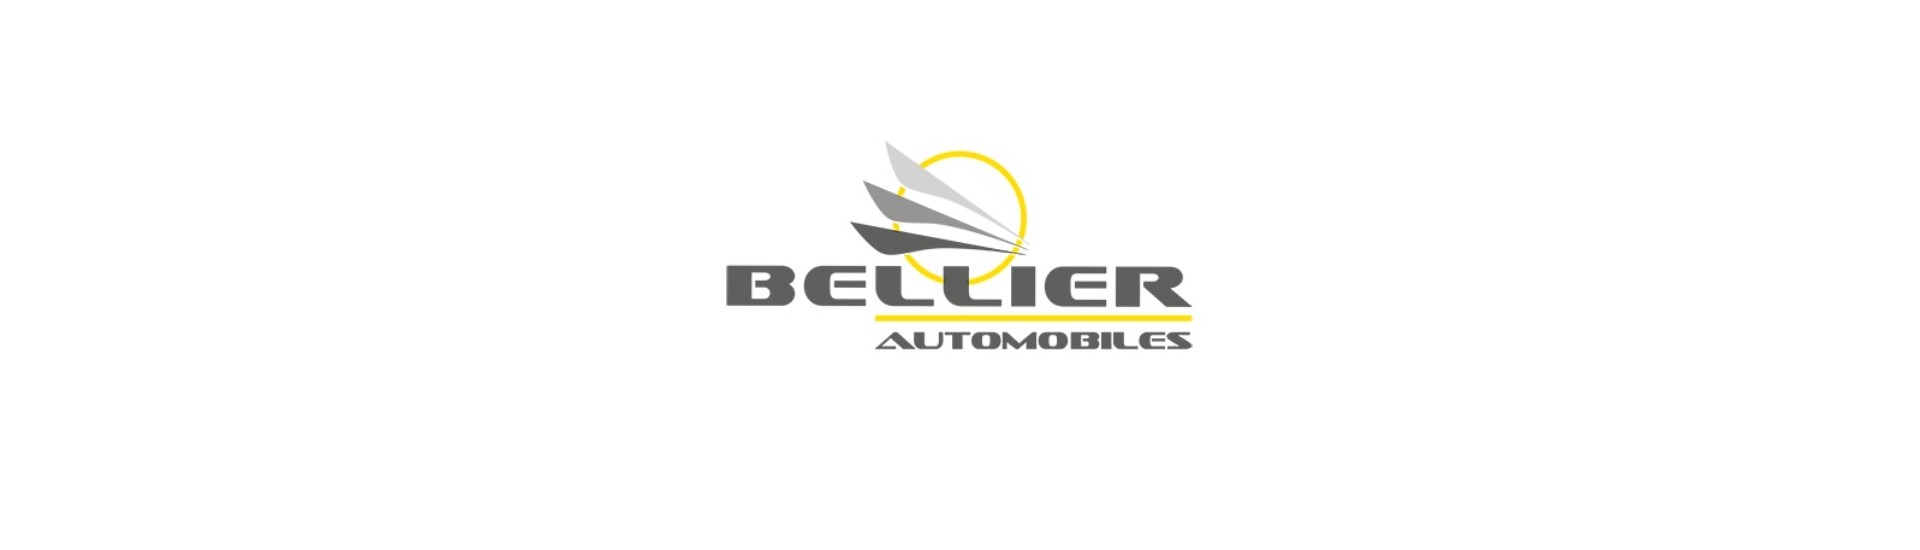 Manómetro de combustible al mejor precio para coche sin permiso Bellier